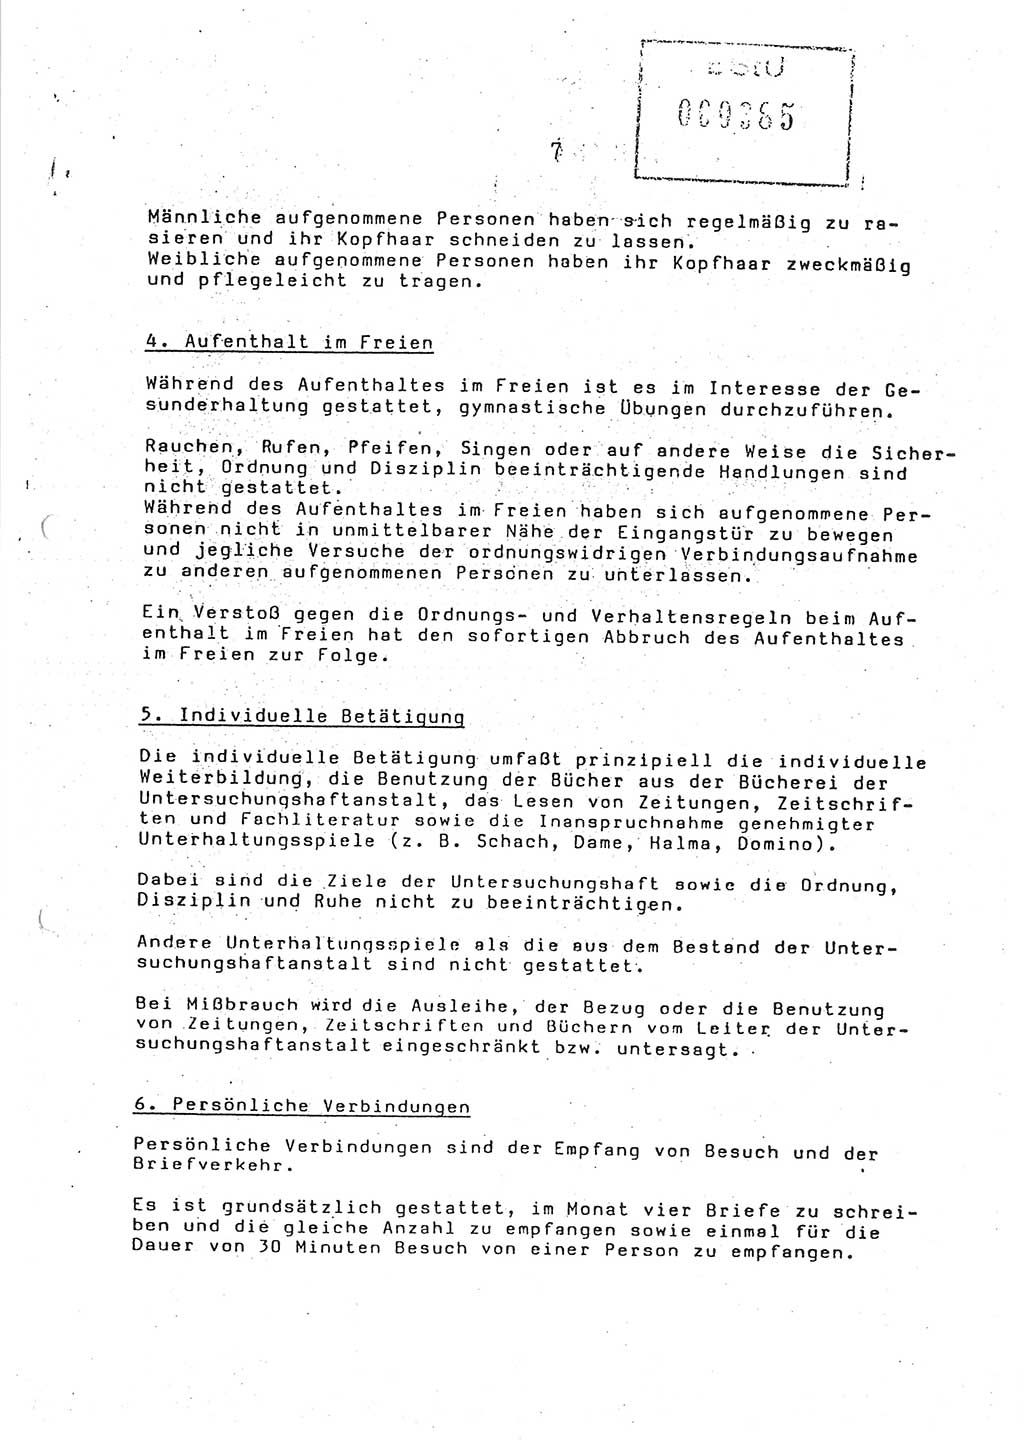 Ordnungs- und Verhaltensregeln (Hausordnung) für in die Untersuchungshaftanstalt (UHA) aufgenommene Personen, Ministerium für Staatssicherheit (MfS) [Deutsche Demokratische Republik (DDR)], Abteilung ⅩⅣ, Leiter, Büro der Leitung (BdL) 35/86, Berlin, 29.1.1986, Blatt 7 (H.-Ordn. UHA MfS DDR Abt. ⅩⅣ Ltr. BdL/35/86 1986, Bl. 7)